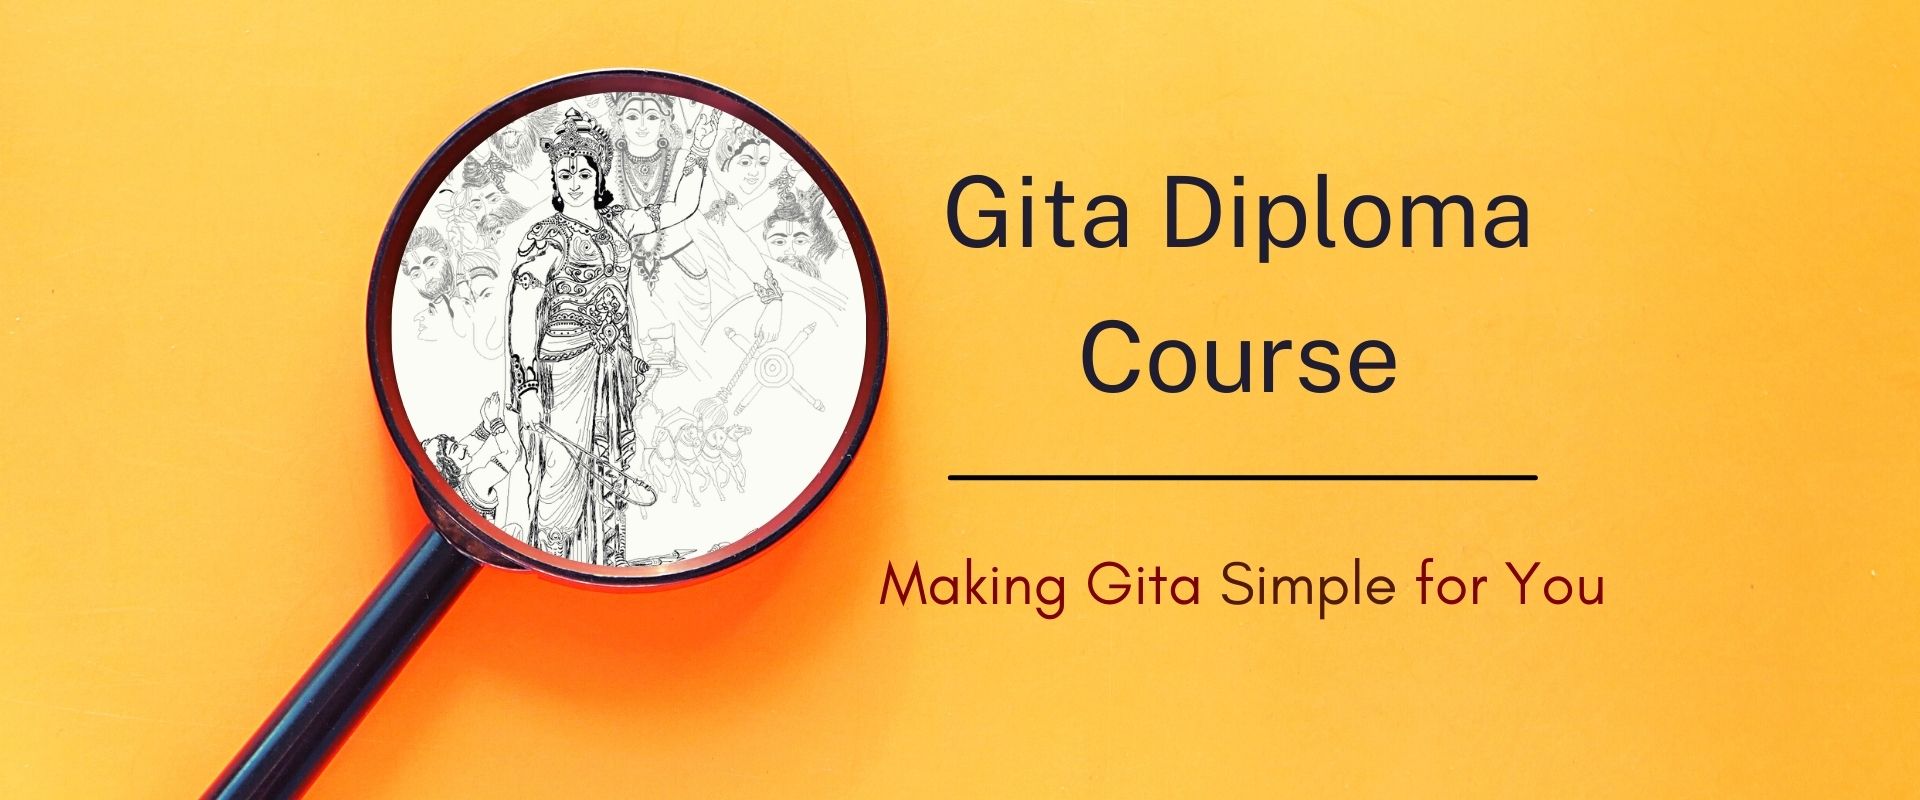 Gita Diploma Course